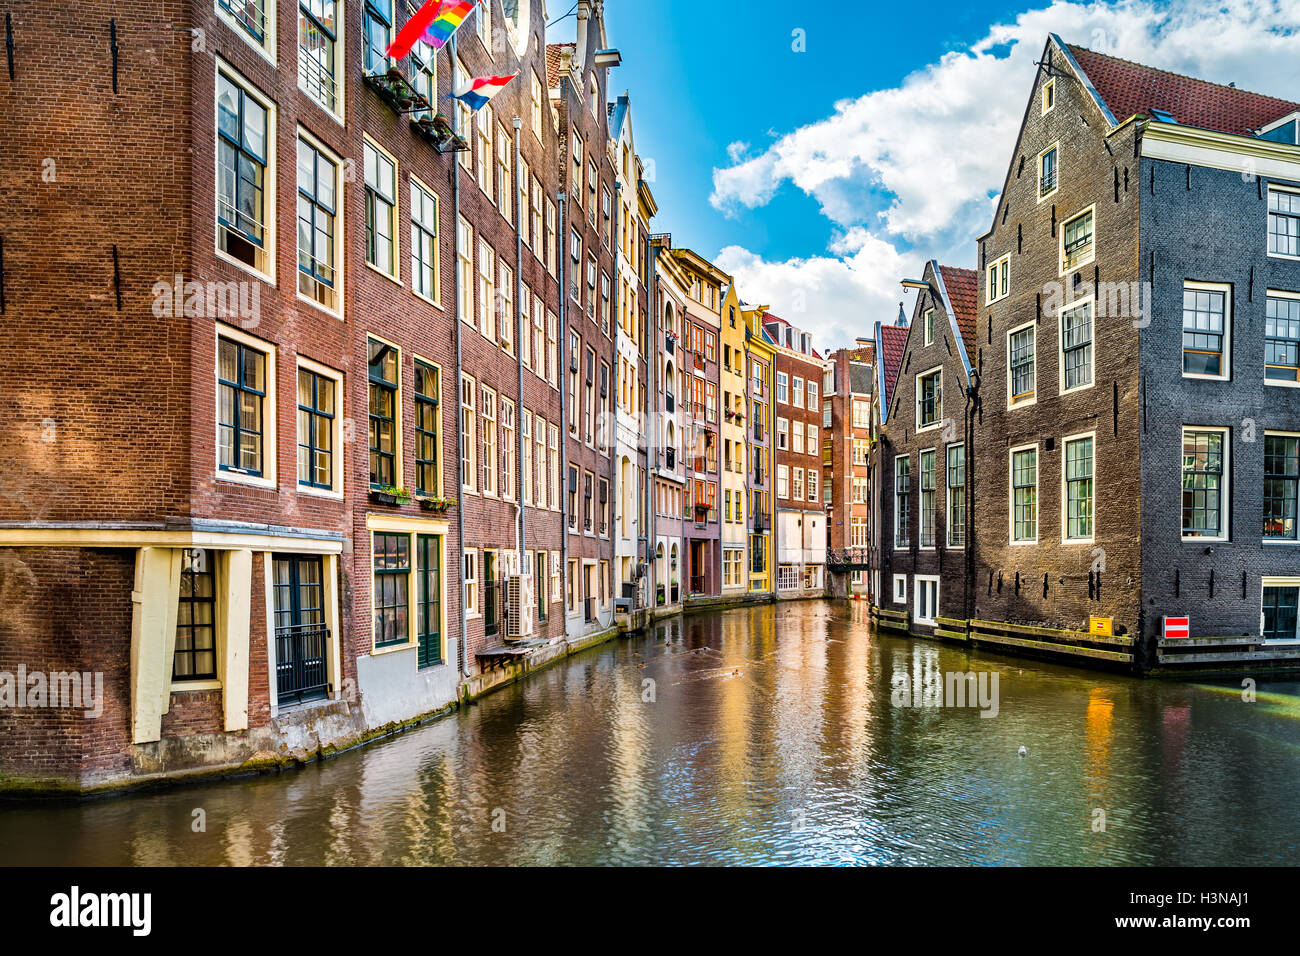 Los canales de Ámsterdam y holandesa típica de la arquitectura medieval en una mañana soleada Foto de stock